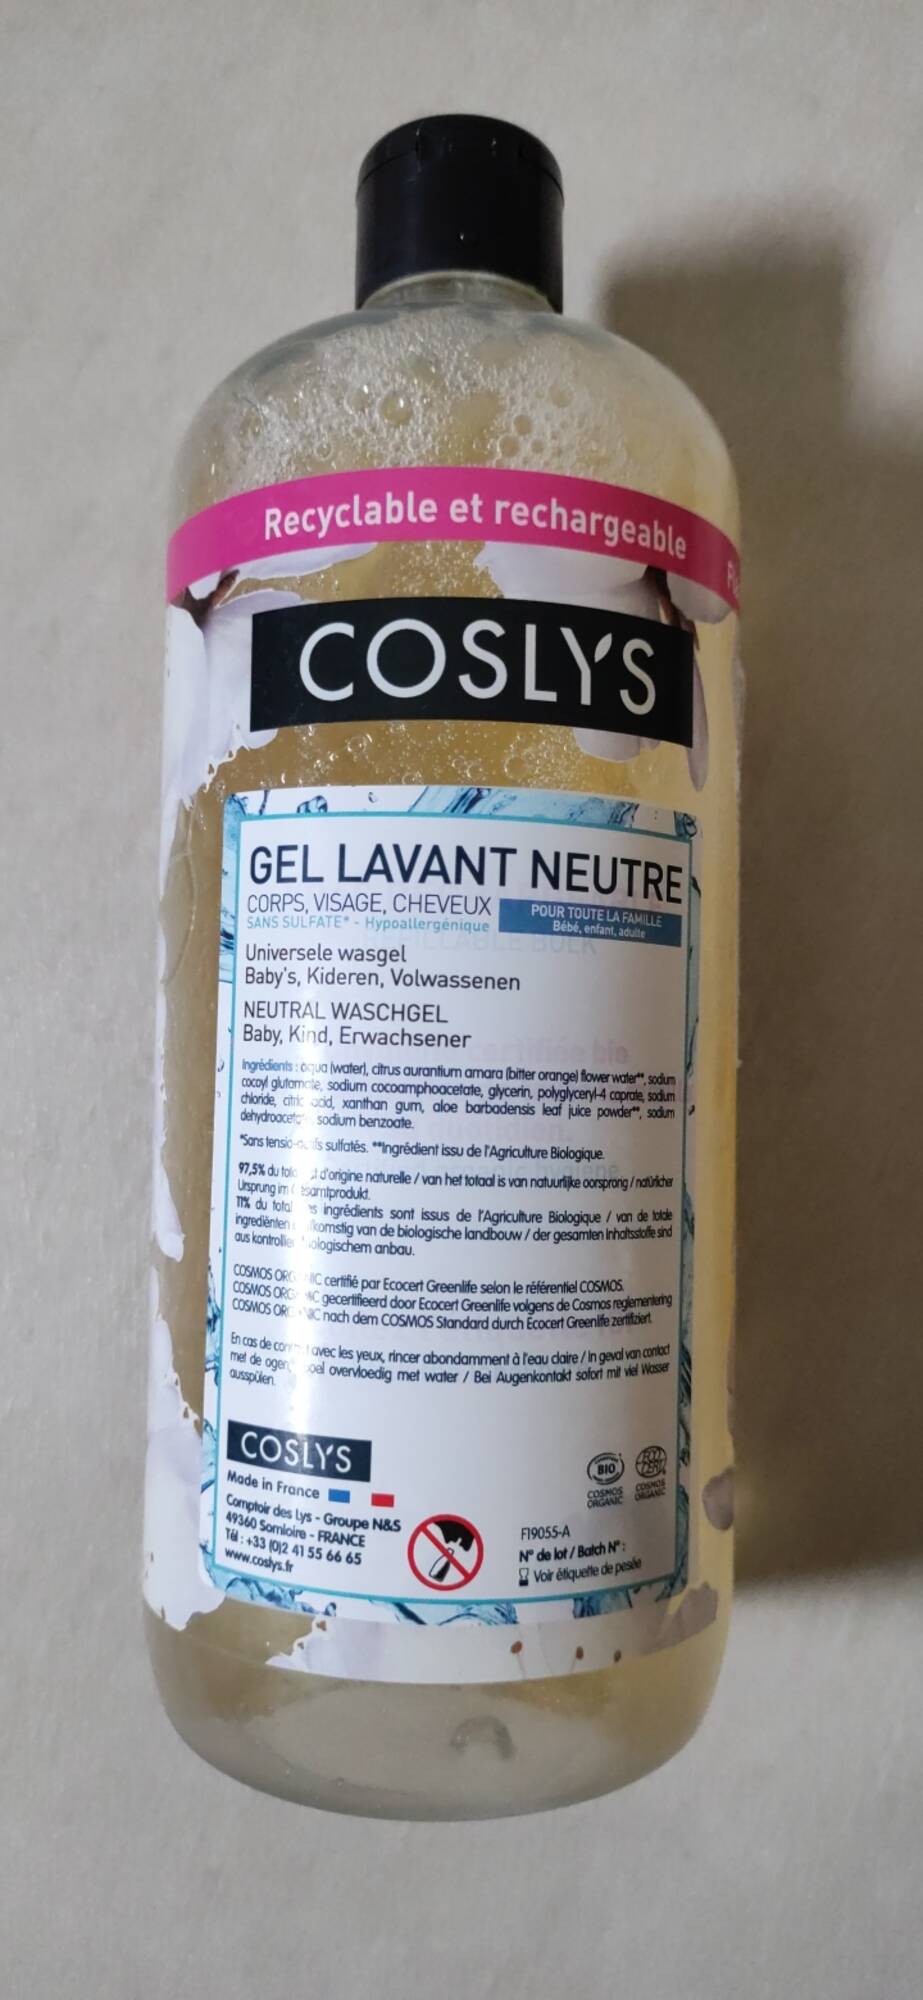 COSLYS - Gel lavant neutre